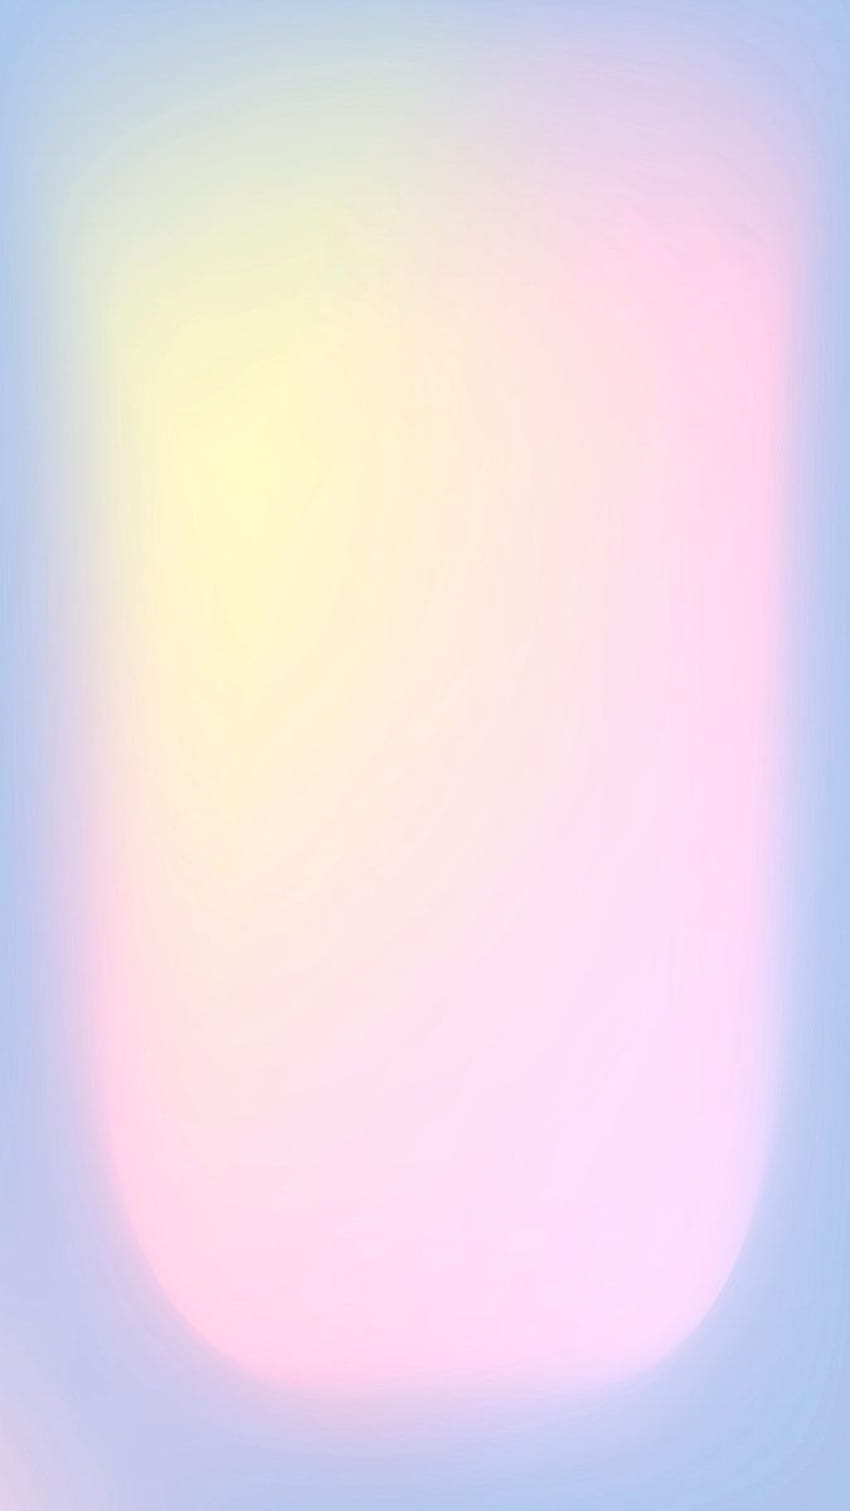 グラデーションぼかしソフト ピンク パステル電話ベクトル。 /ナニーによる。 オーラカラー, パステルグラデーション, かわいいパターン, グラデーションの美学 HD電話の壁紙